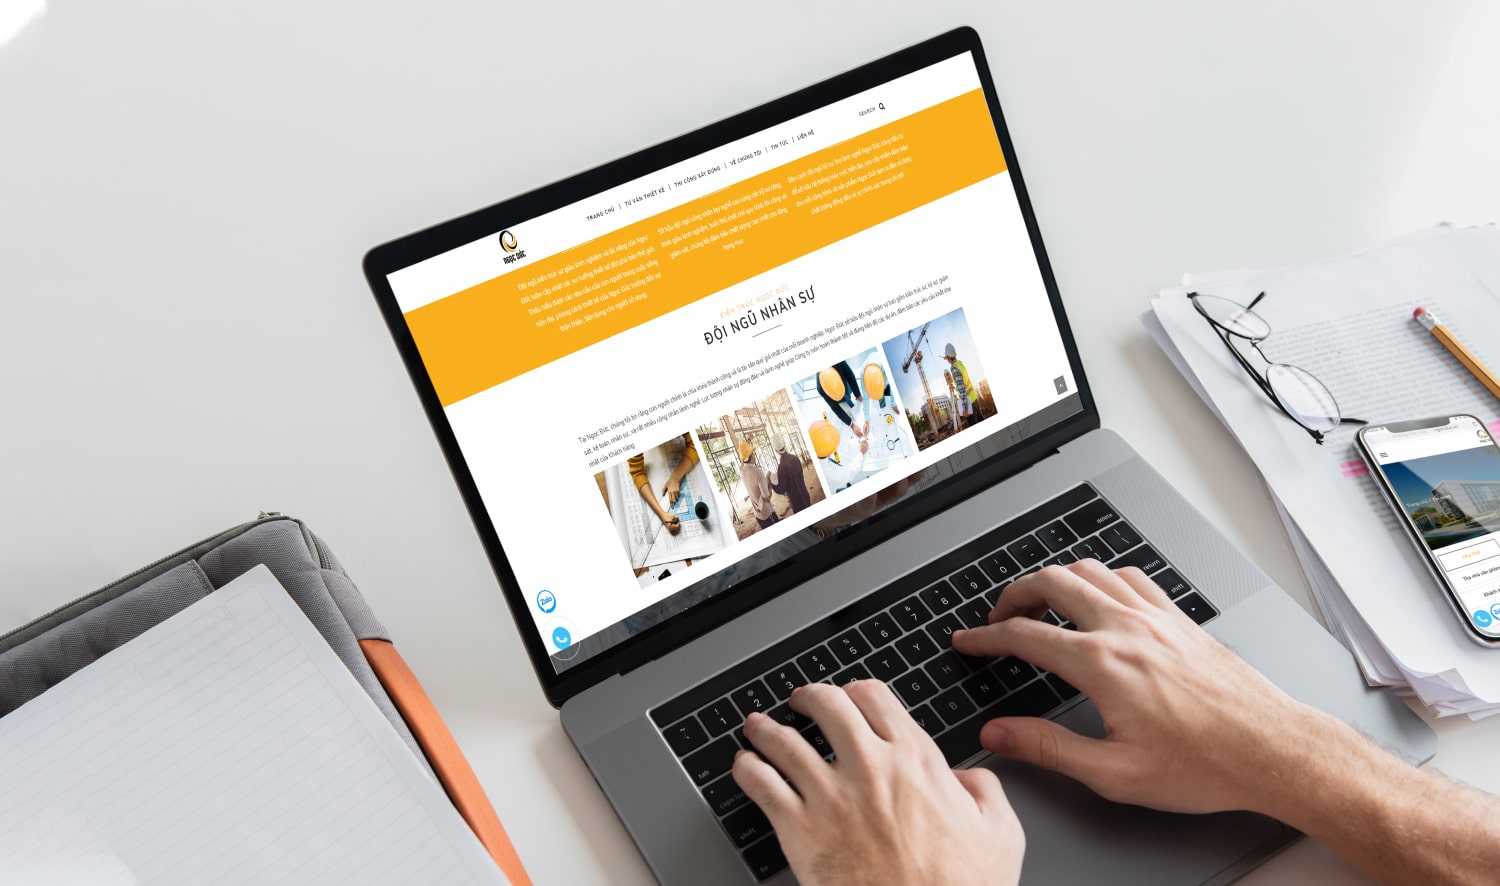 Cánh Cam là đơn vị cung cấp giải pháp thiết kế website xây dựng uy tín, đáng tin cậy cho khách hàng